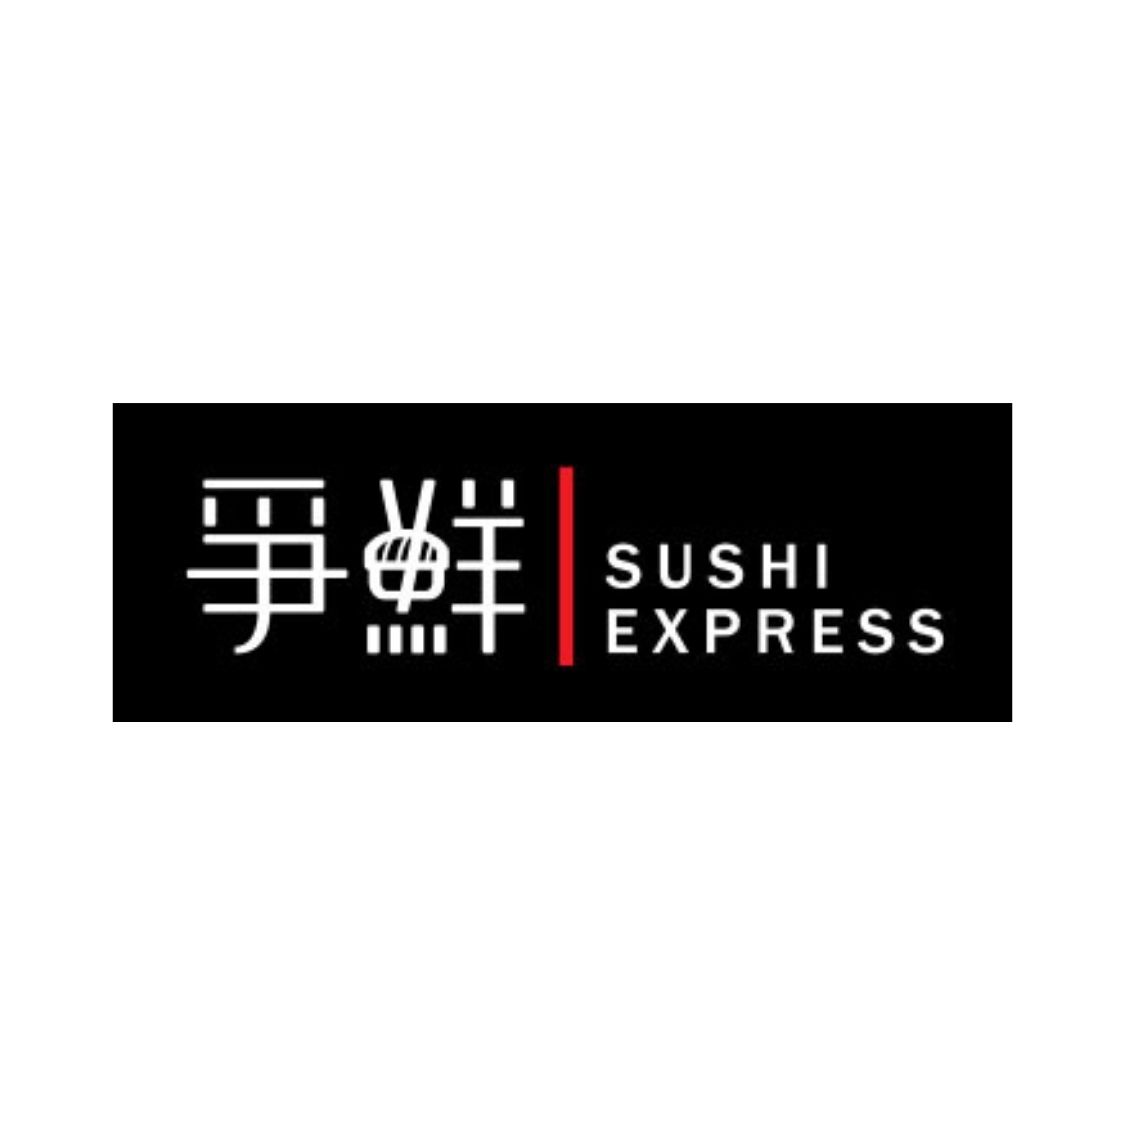 Sushi Express Logo.jpg